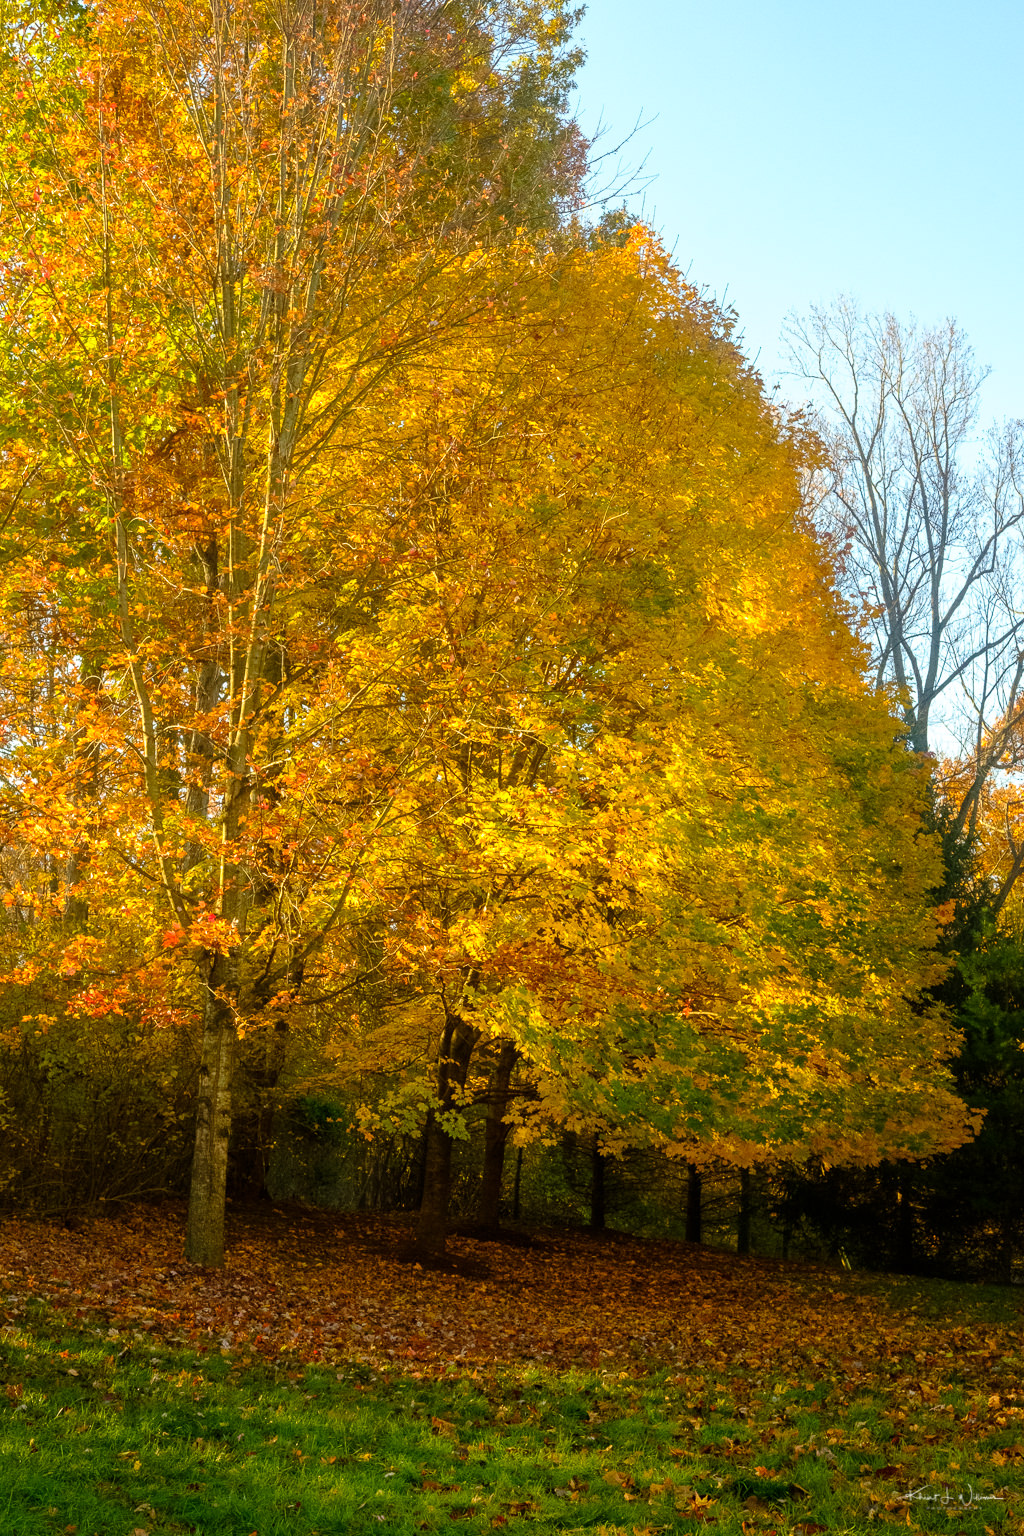 Tree in fall splendour